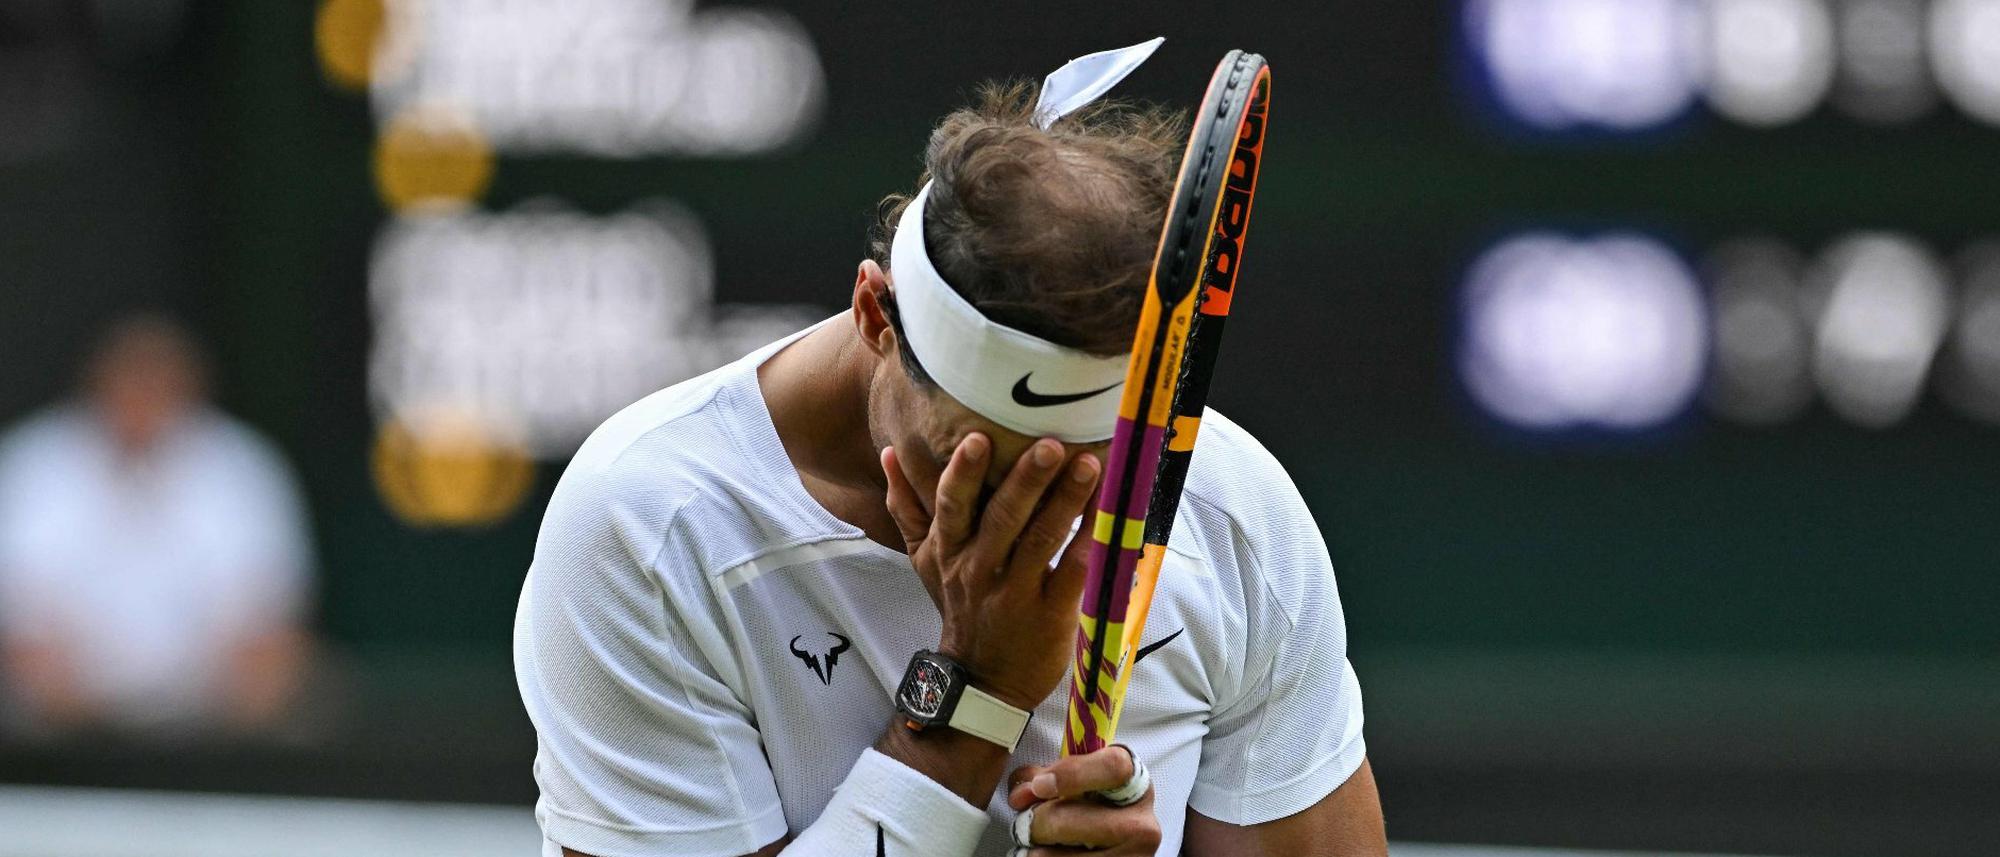 Spanischer Tennis-Star hat Riss im Bauchmuskel Nadal gibt vor Wimbledon-Halbfinale auf